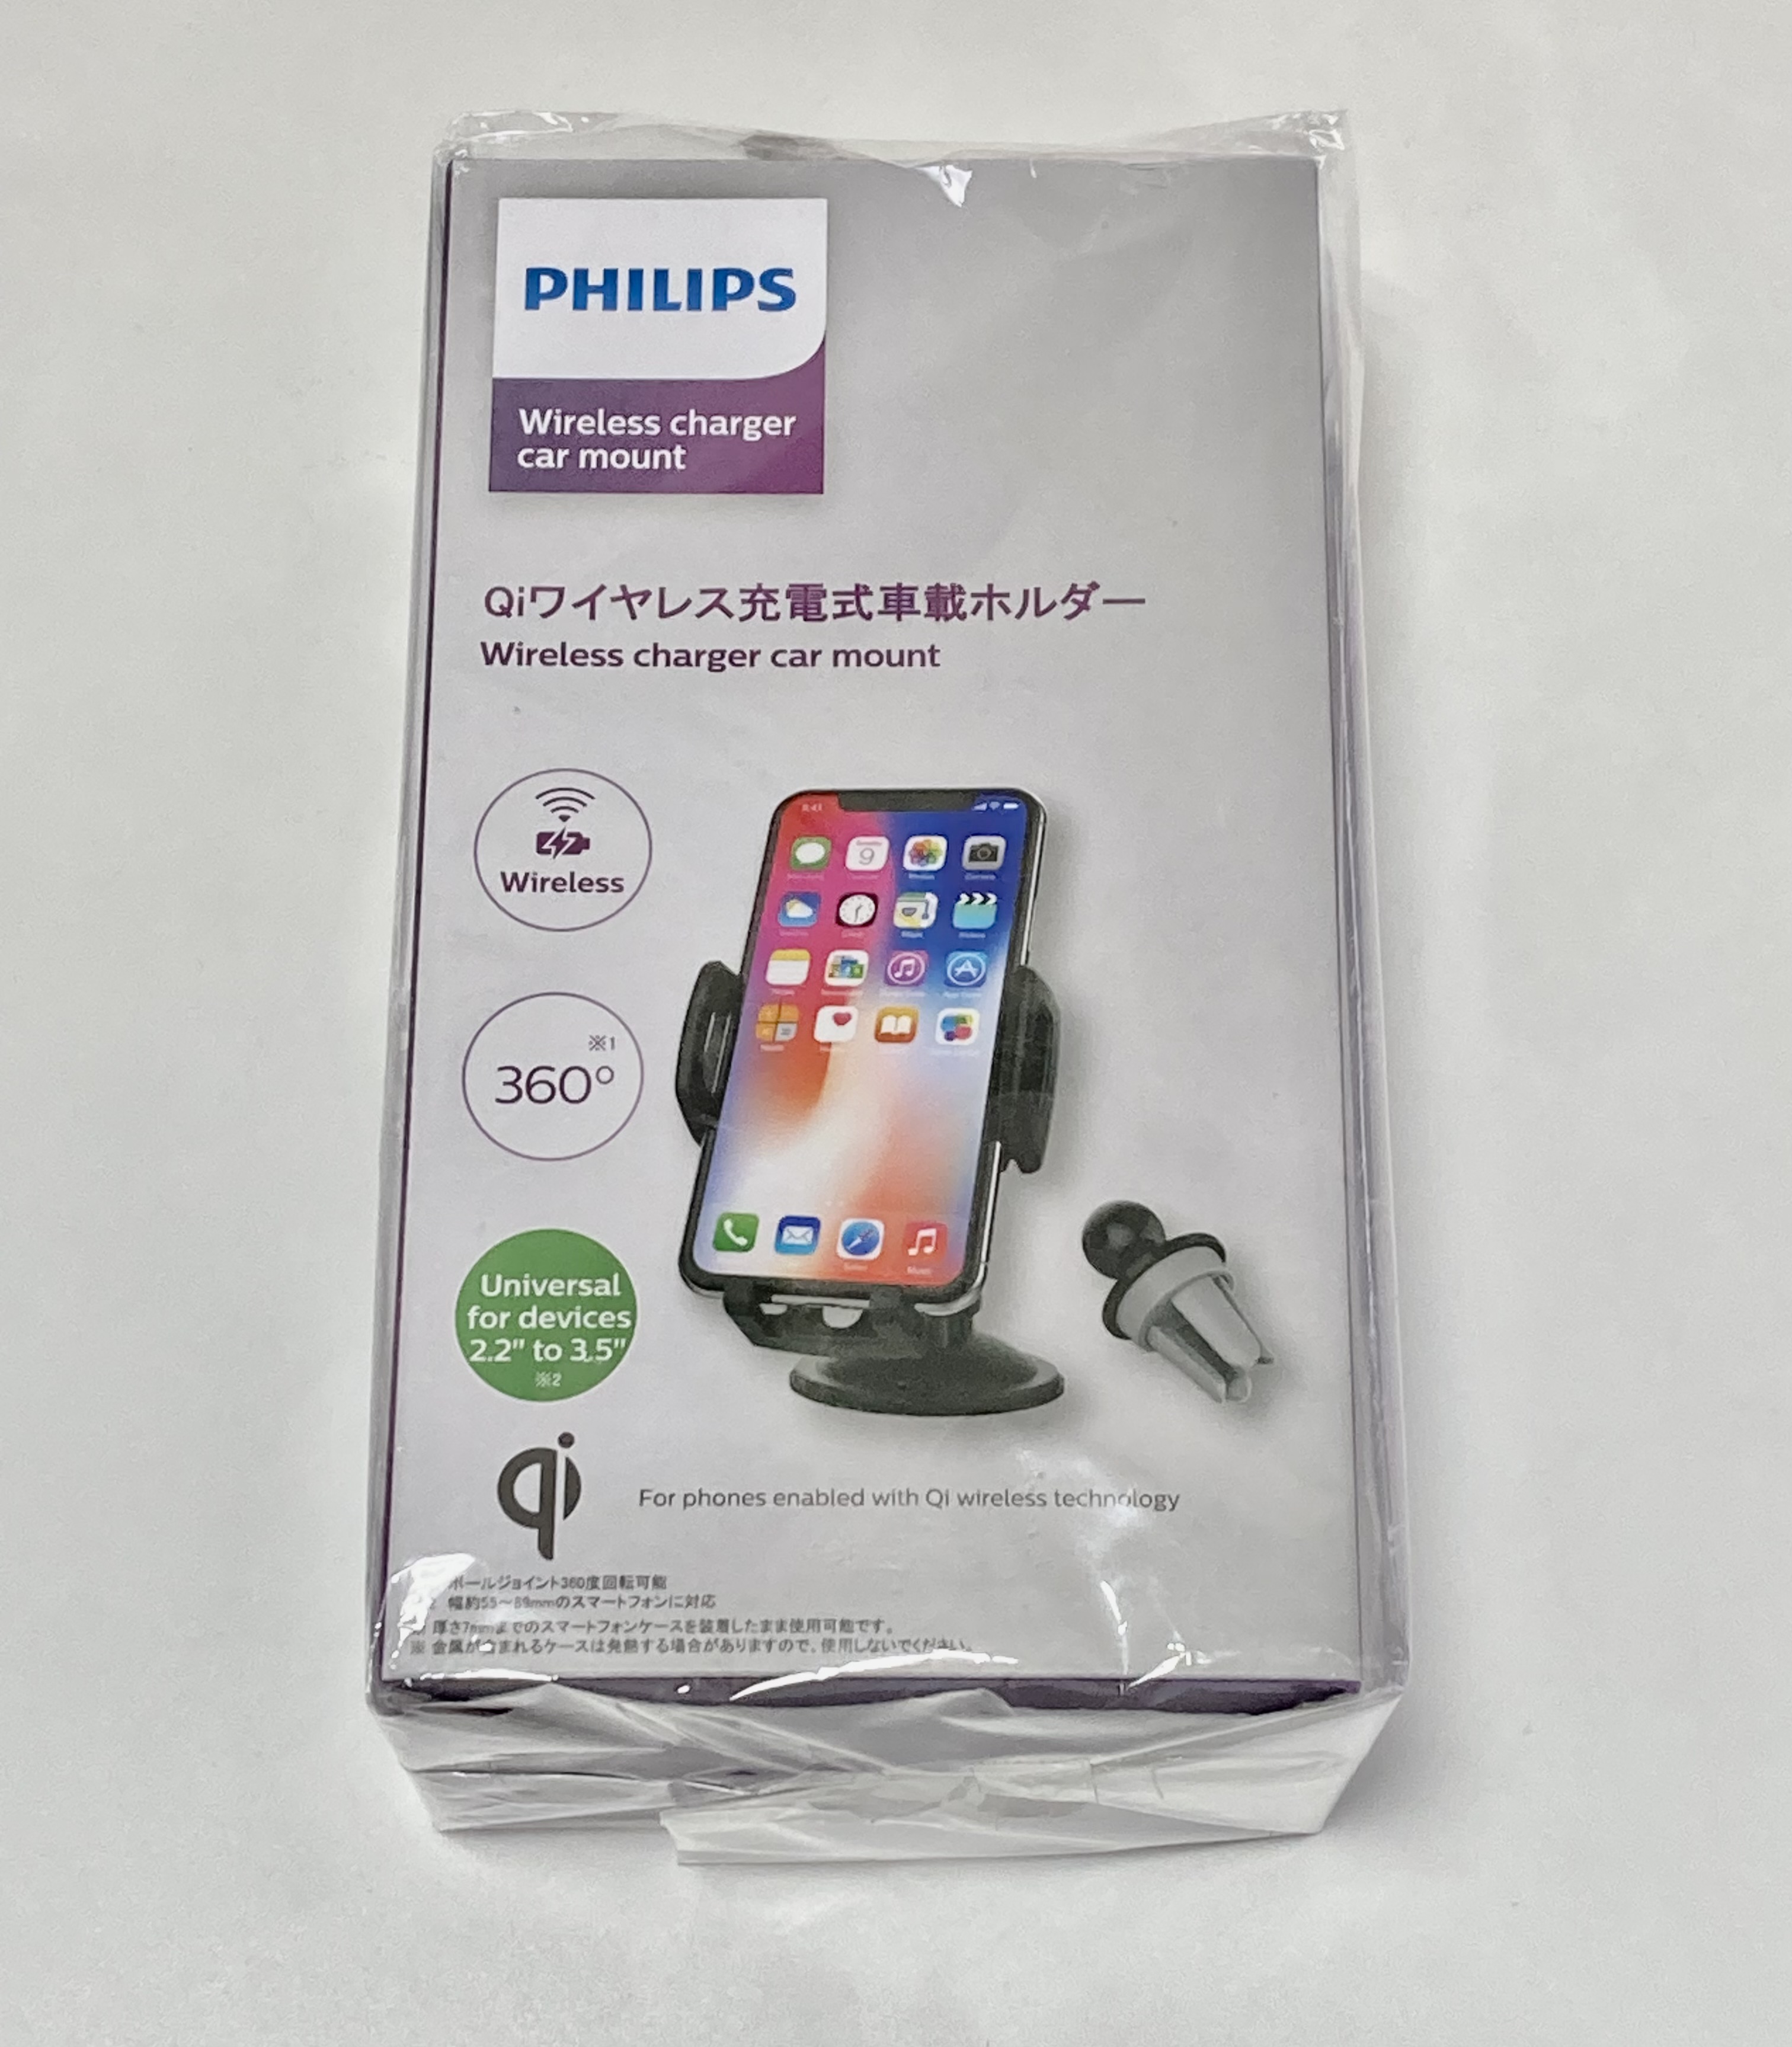 Philips Qiワイヤレス充電式車載ホルダー